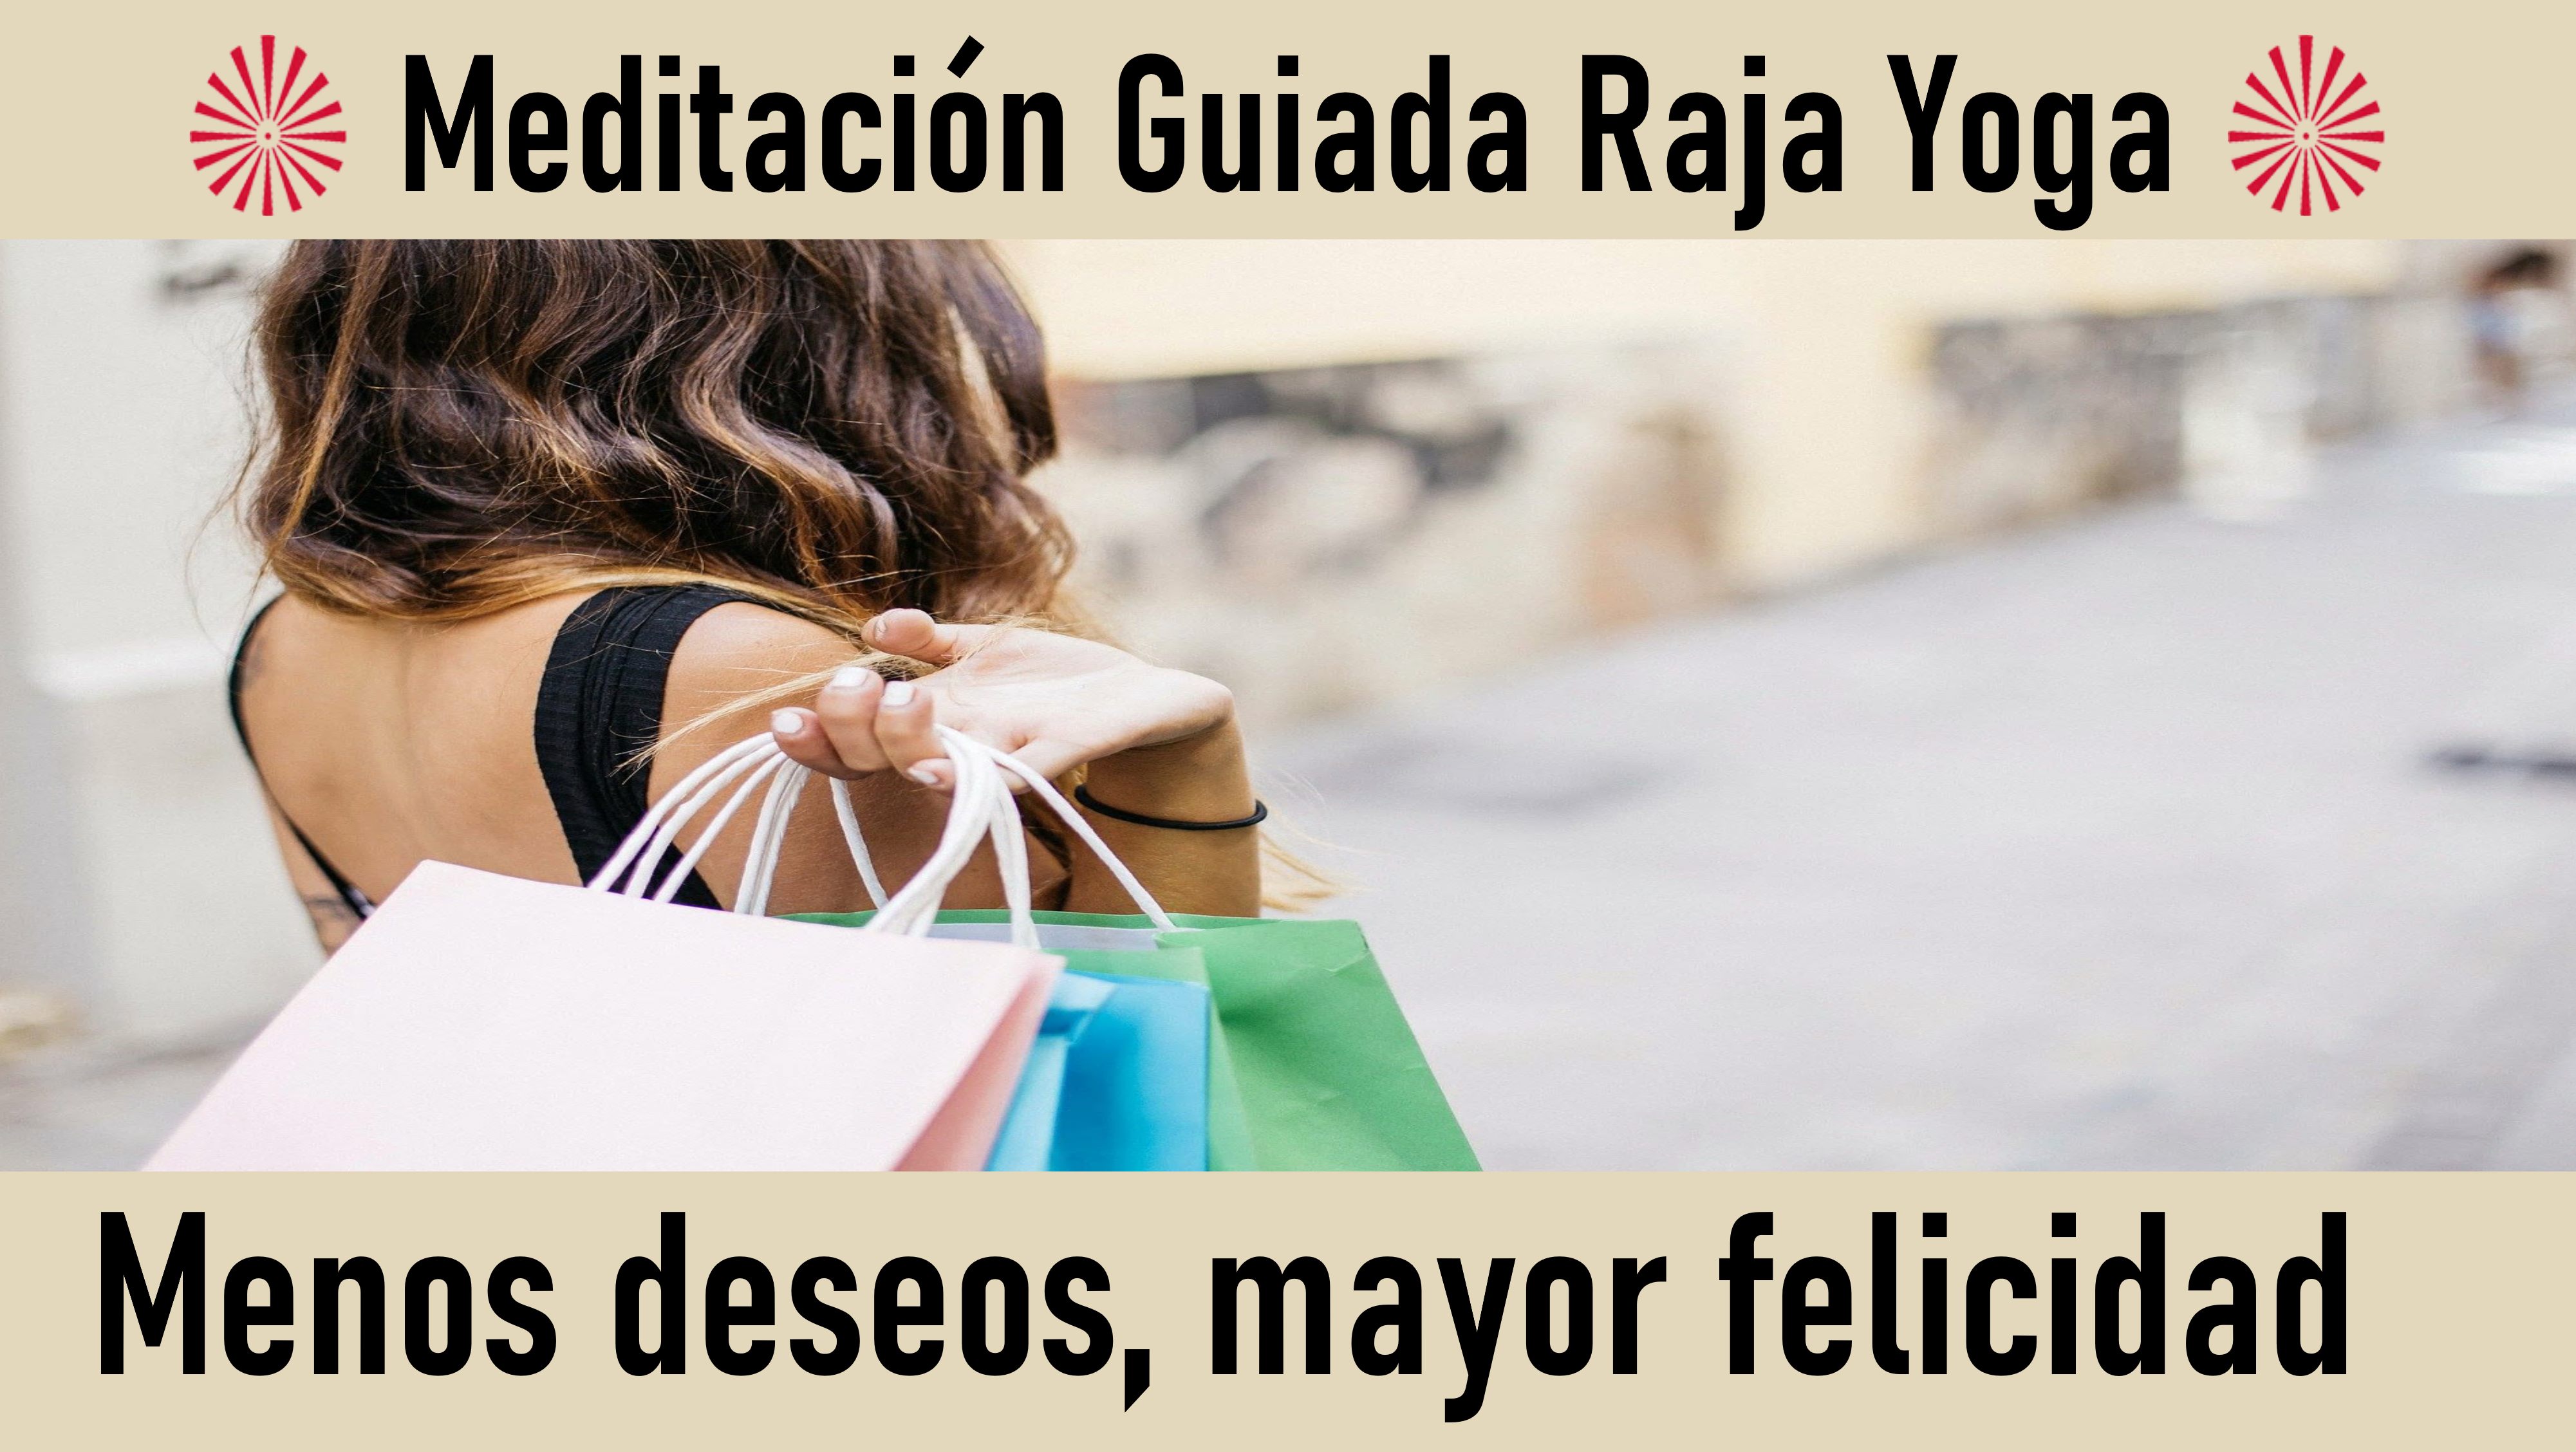 Meditación Raja Yoga: Menos deseos, mayor felicidad (9 Junio 2020) On-line desde Sevilla